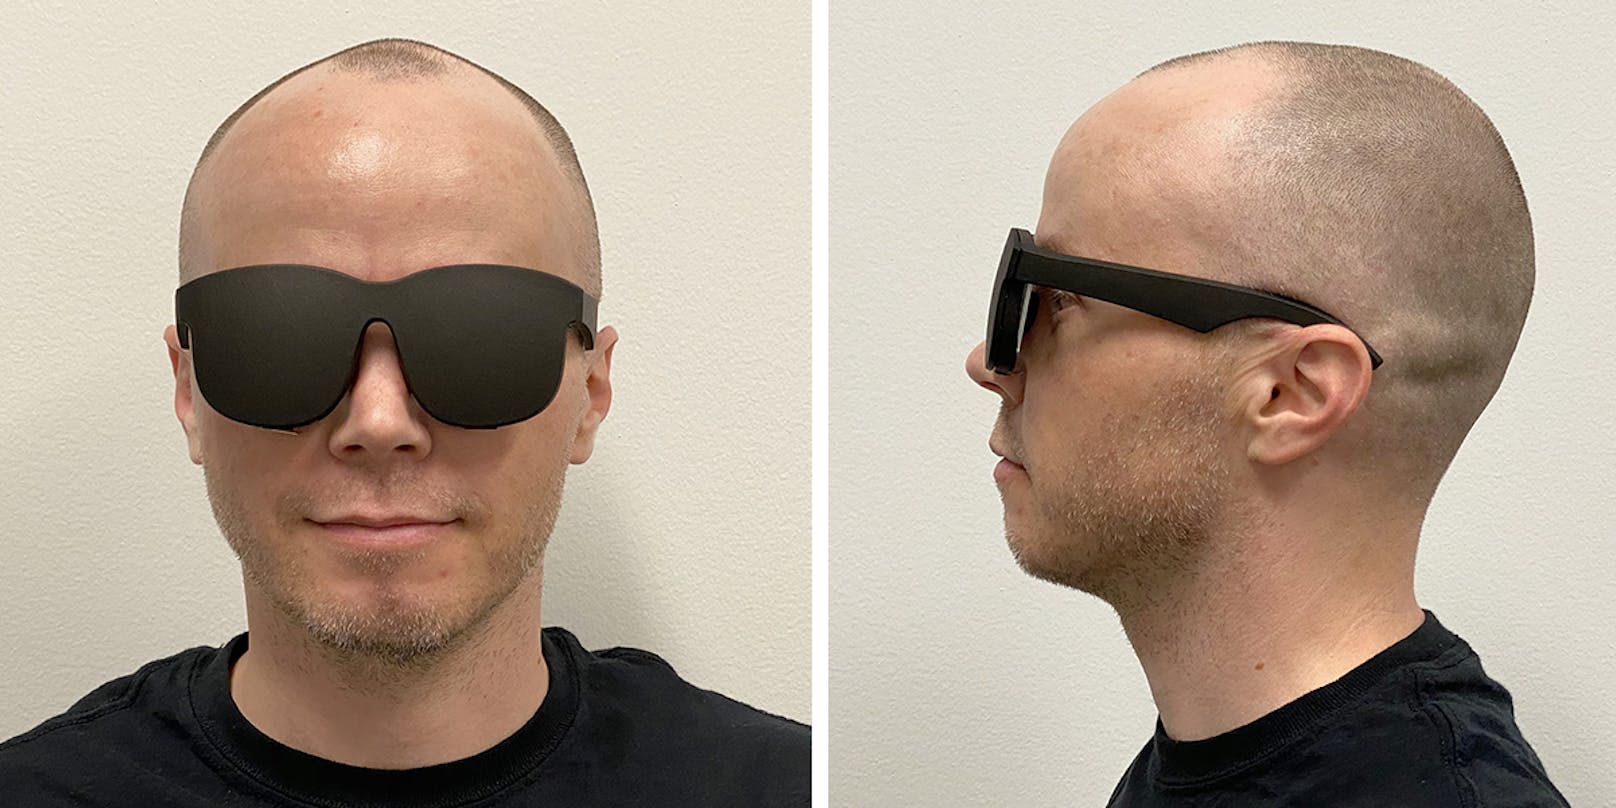 Der Prototyp für die neue VR-Brille – dank neuer Projektionstechnik superflach